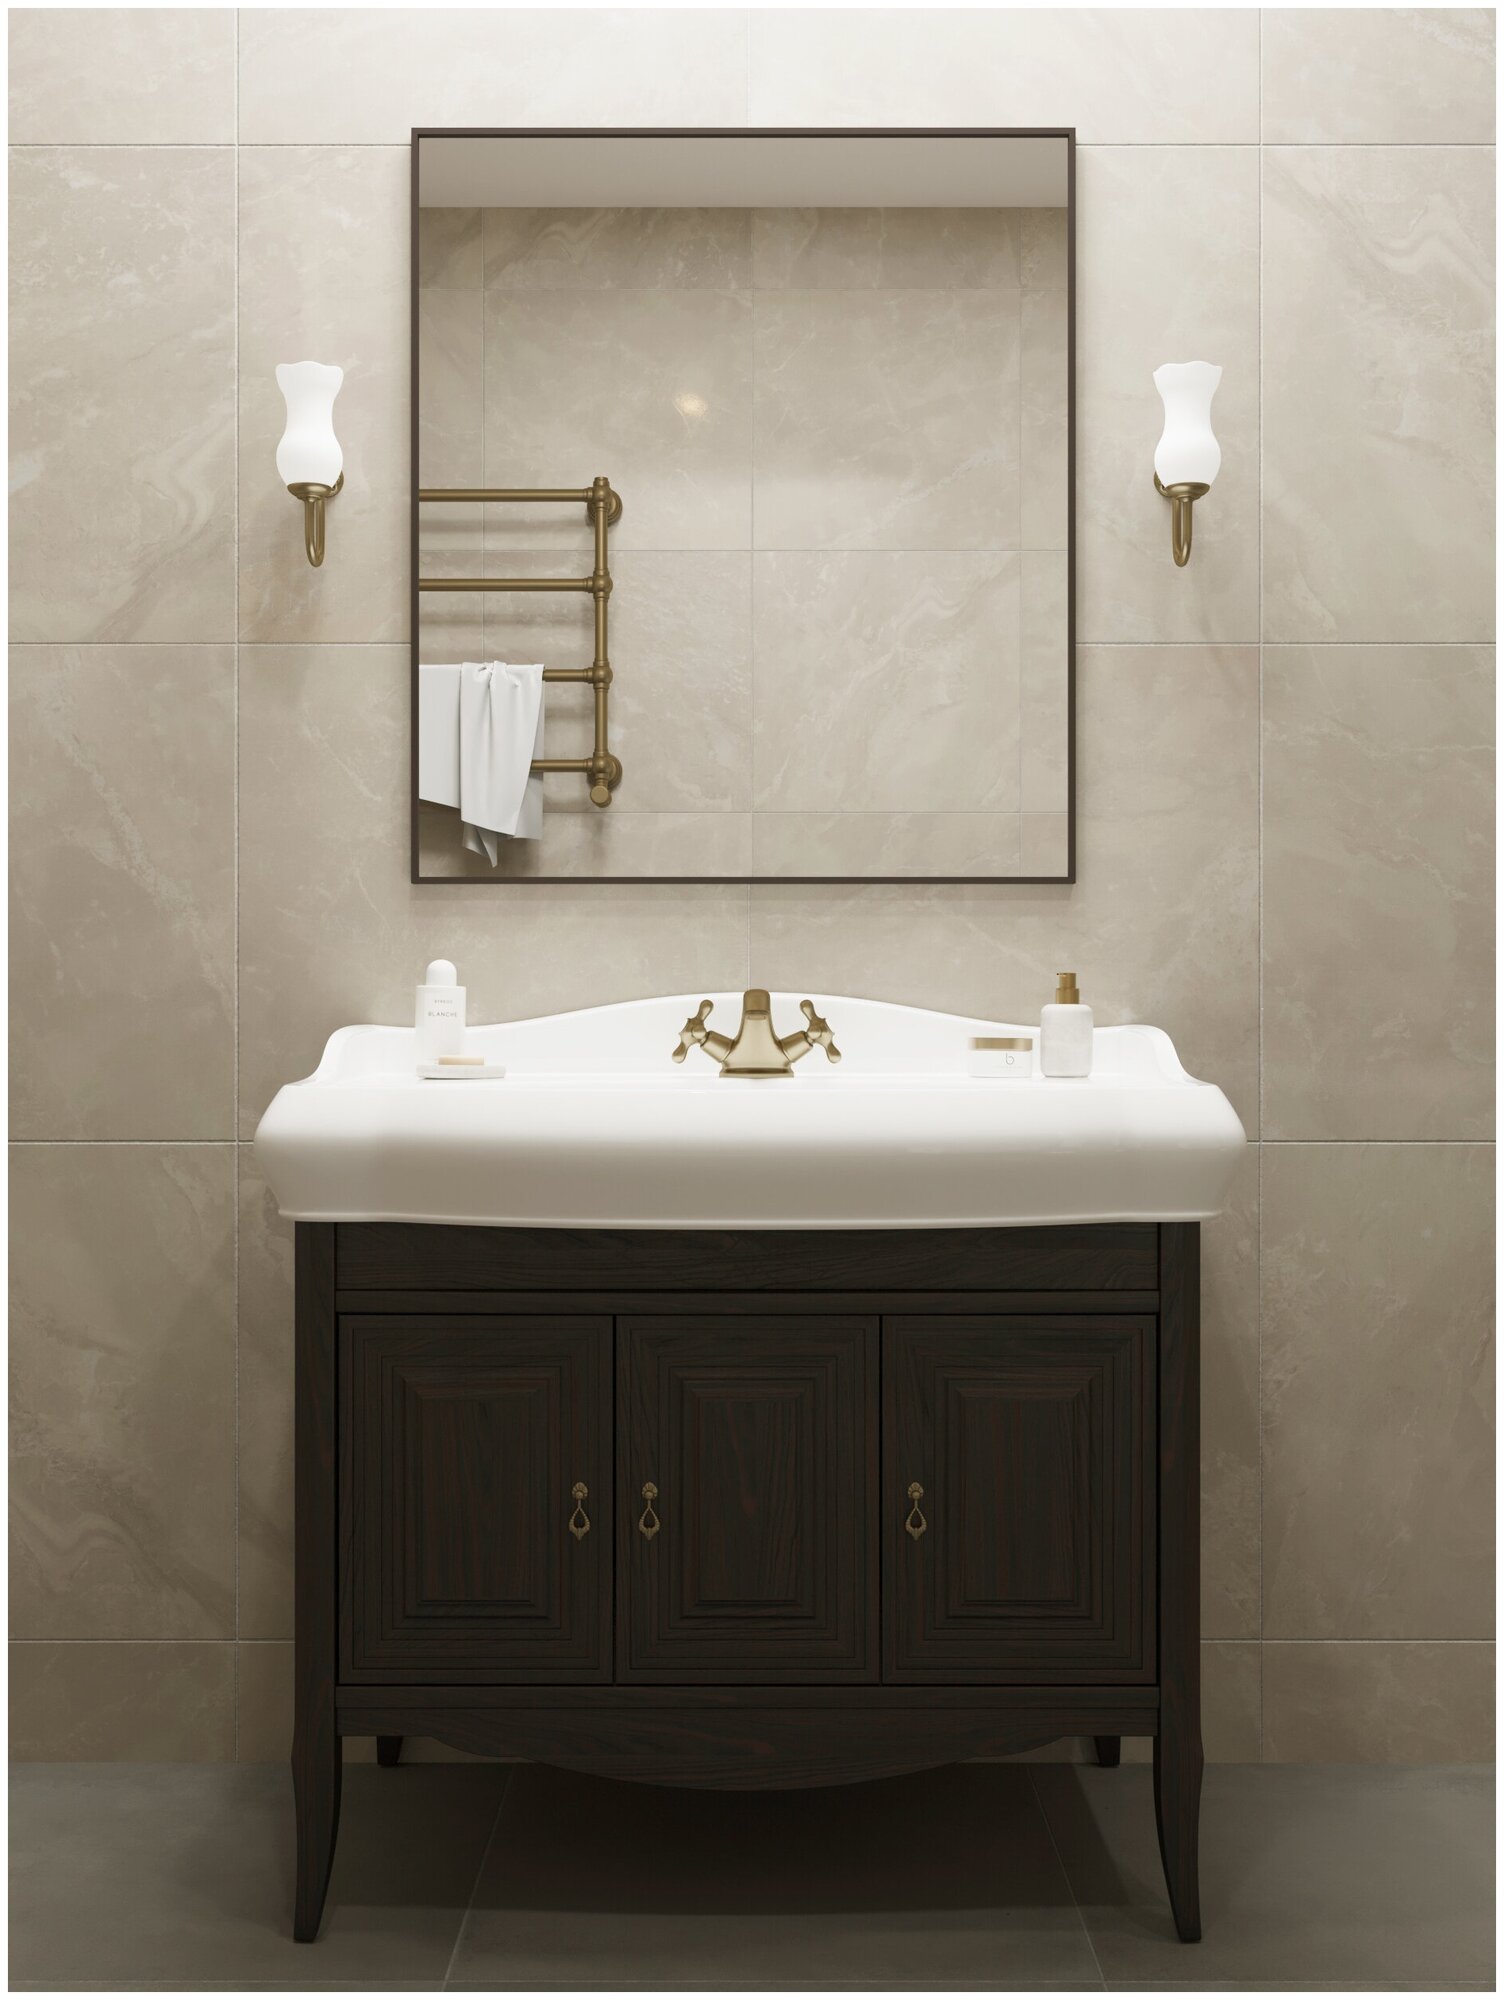 Зеркало для ванной, Зеркало настенное, Зеркало декоративное 92х81 см, цвет рамы - темно-коричневый, TODA ALMA - фотография № 1